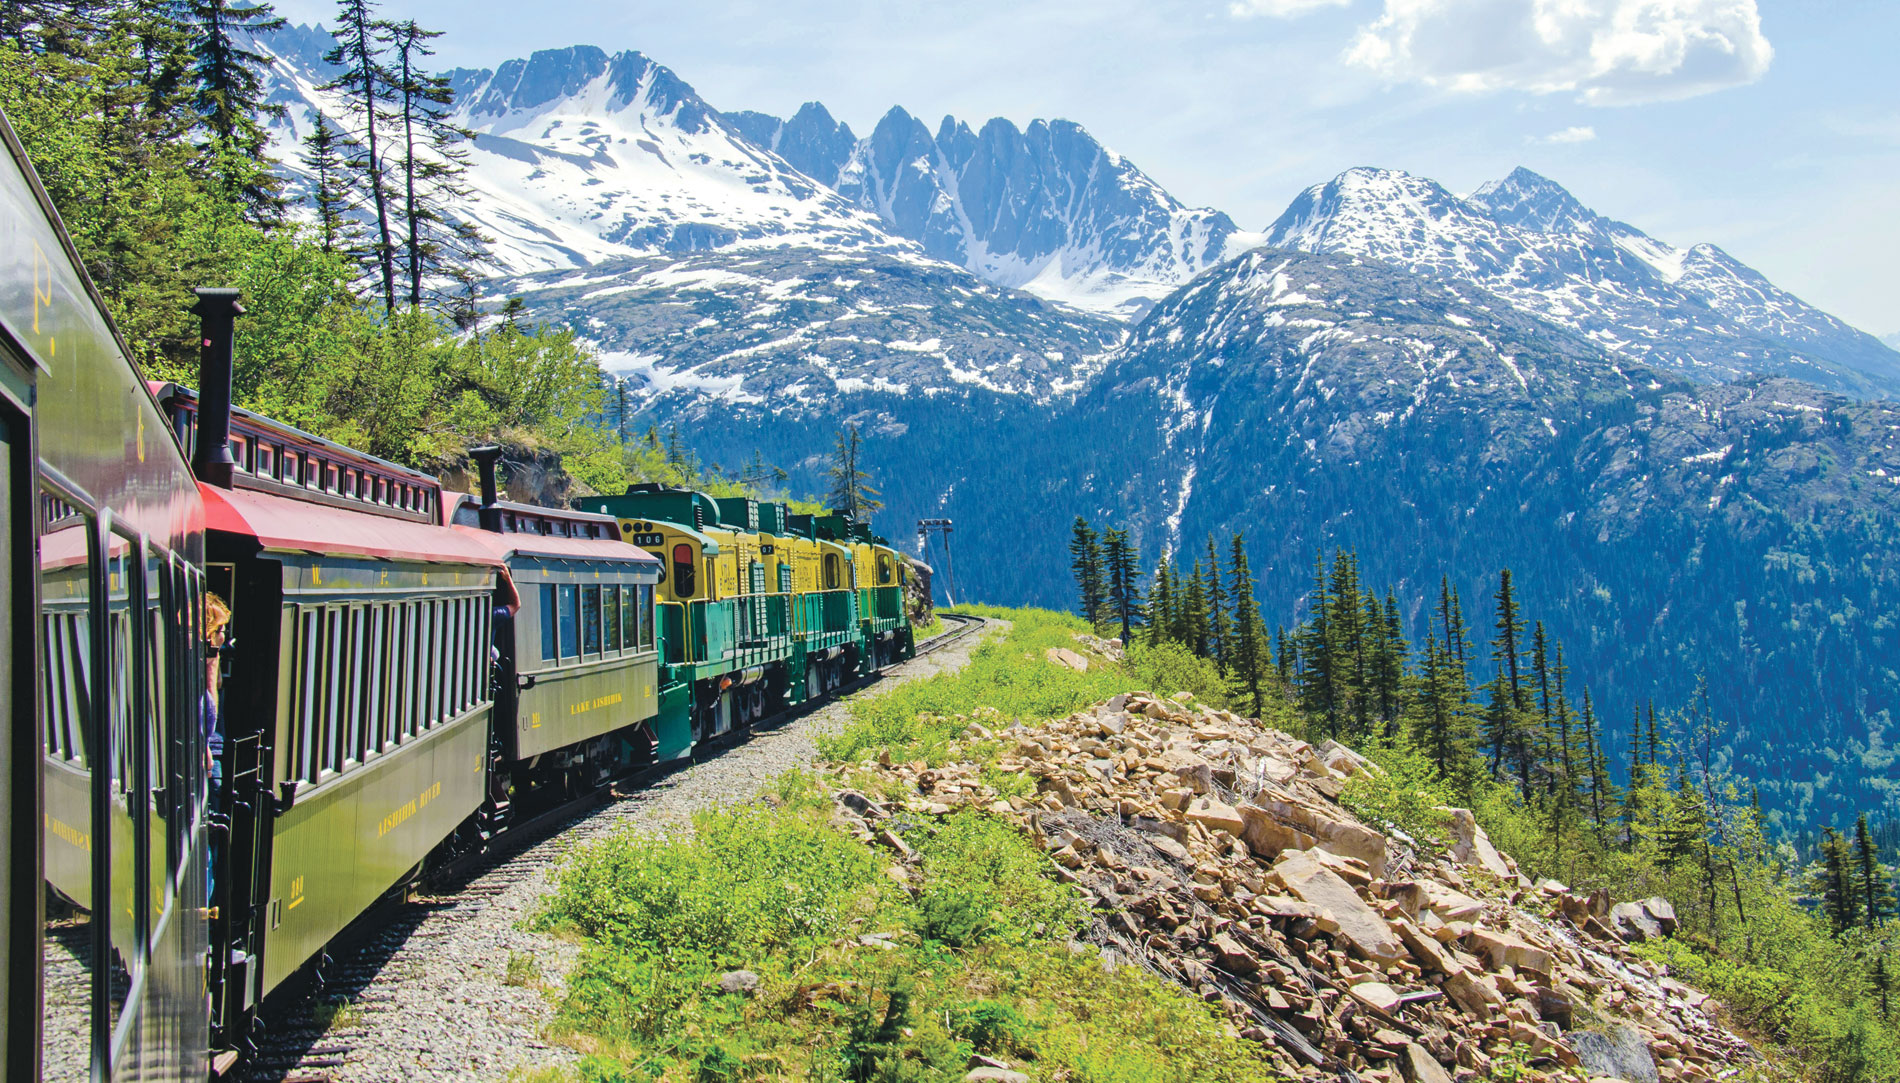 The White Pass & Yukon Rout Railway